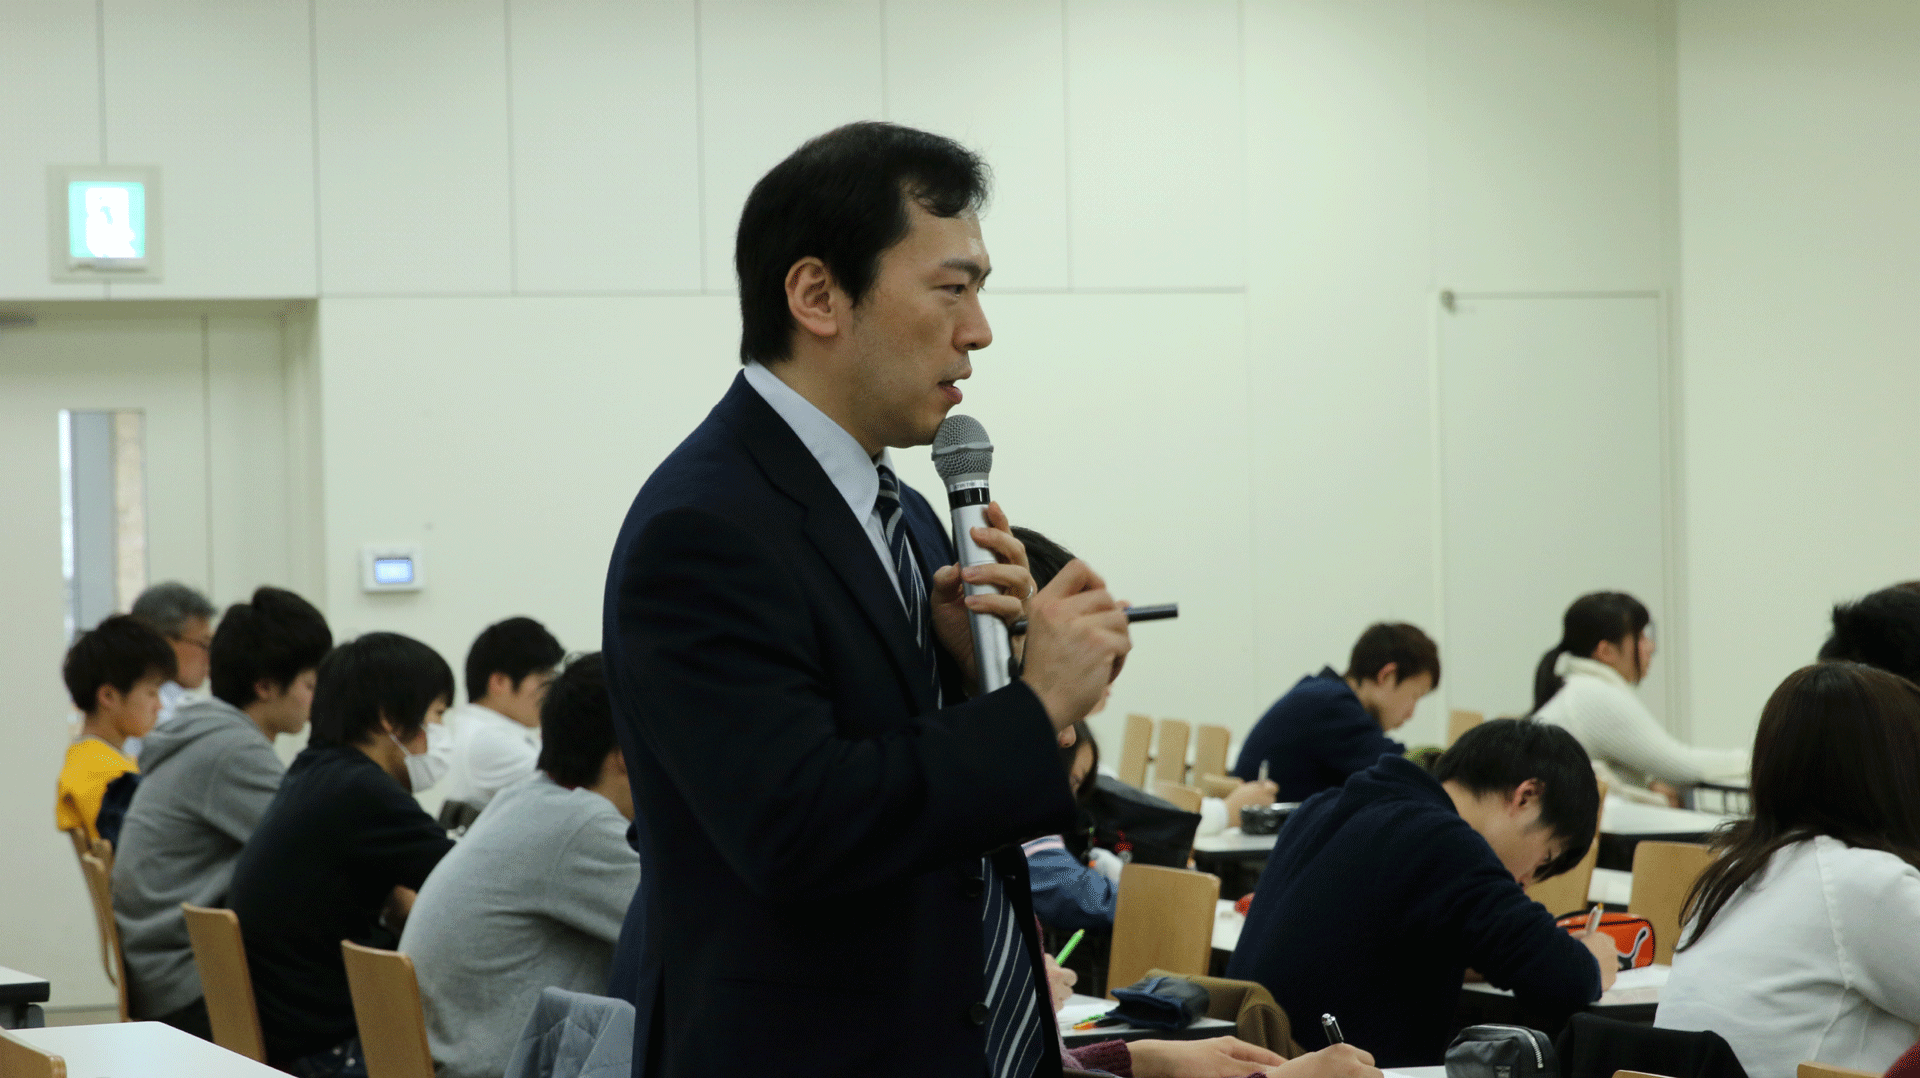 「帝京学」の授業で冲永佳史理事長・学長が講義 -- 「主体的に考える力」を培う1年生対象の授業